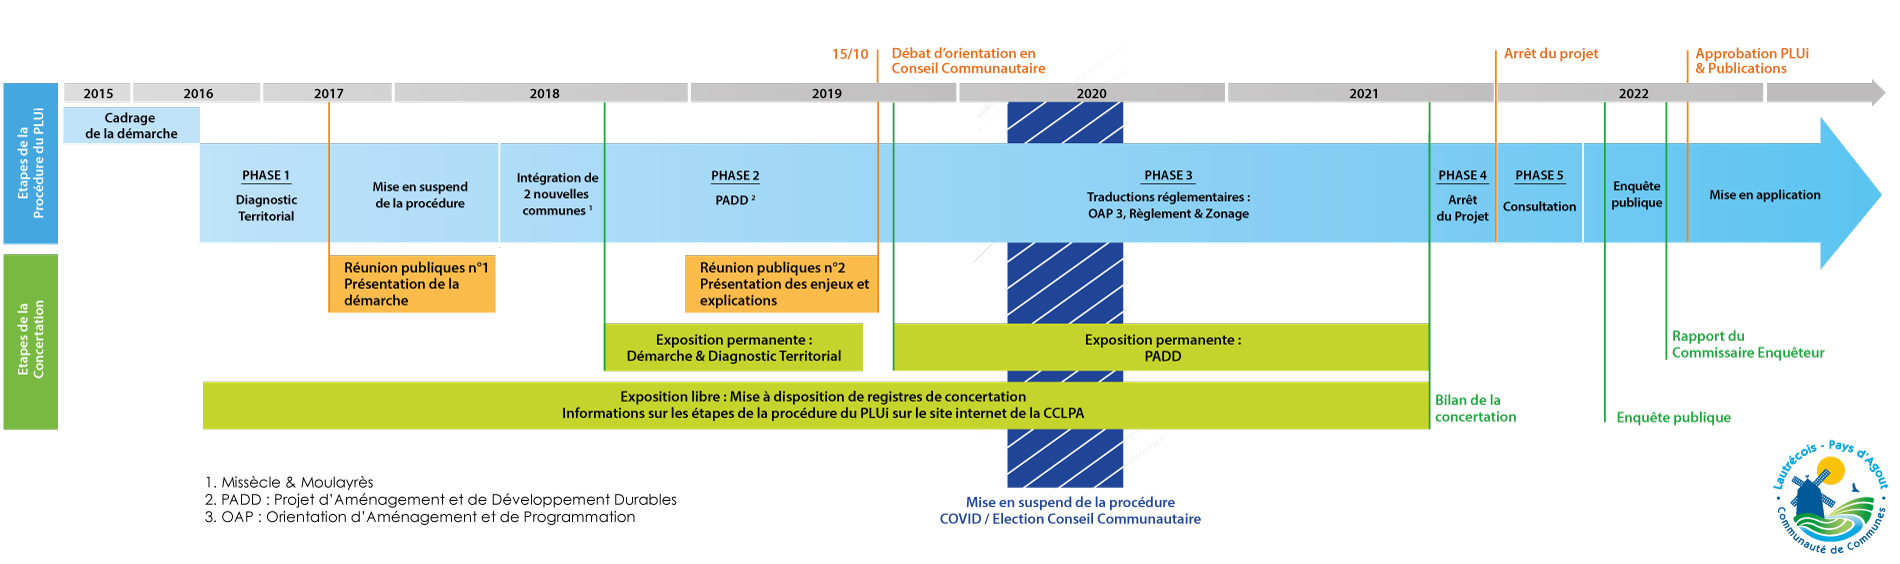 Schéma d'avancement du PLUi / CCLPA